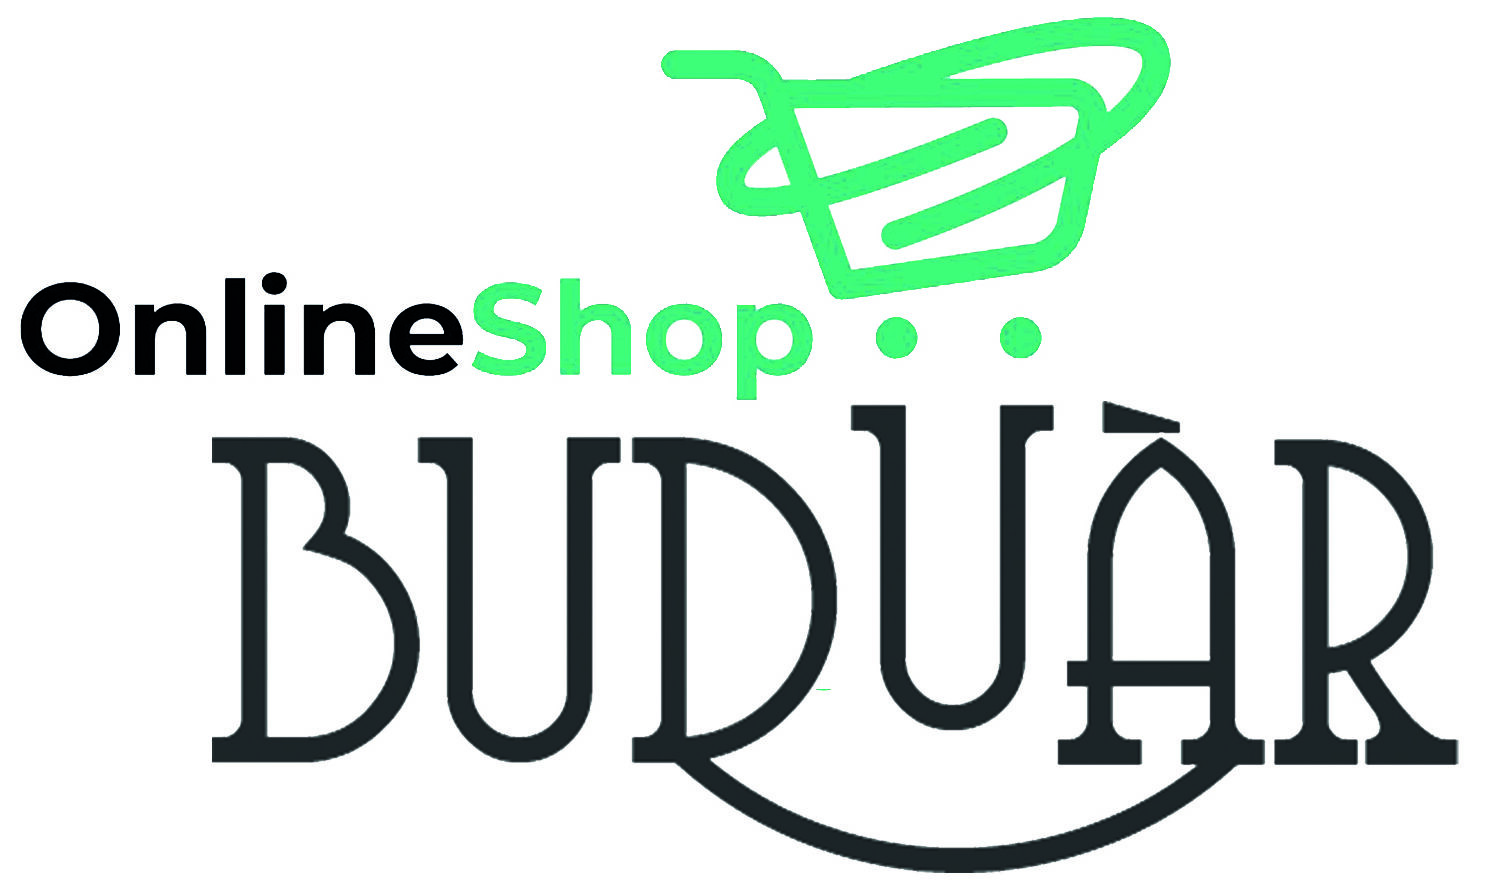 Buduar shop